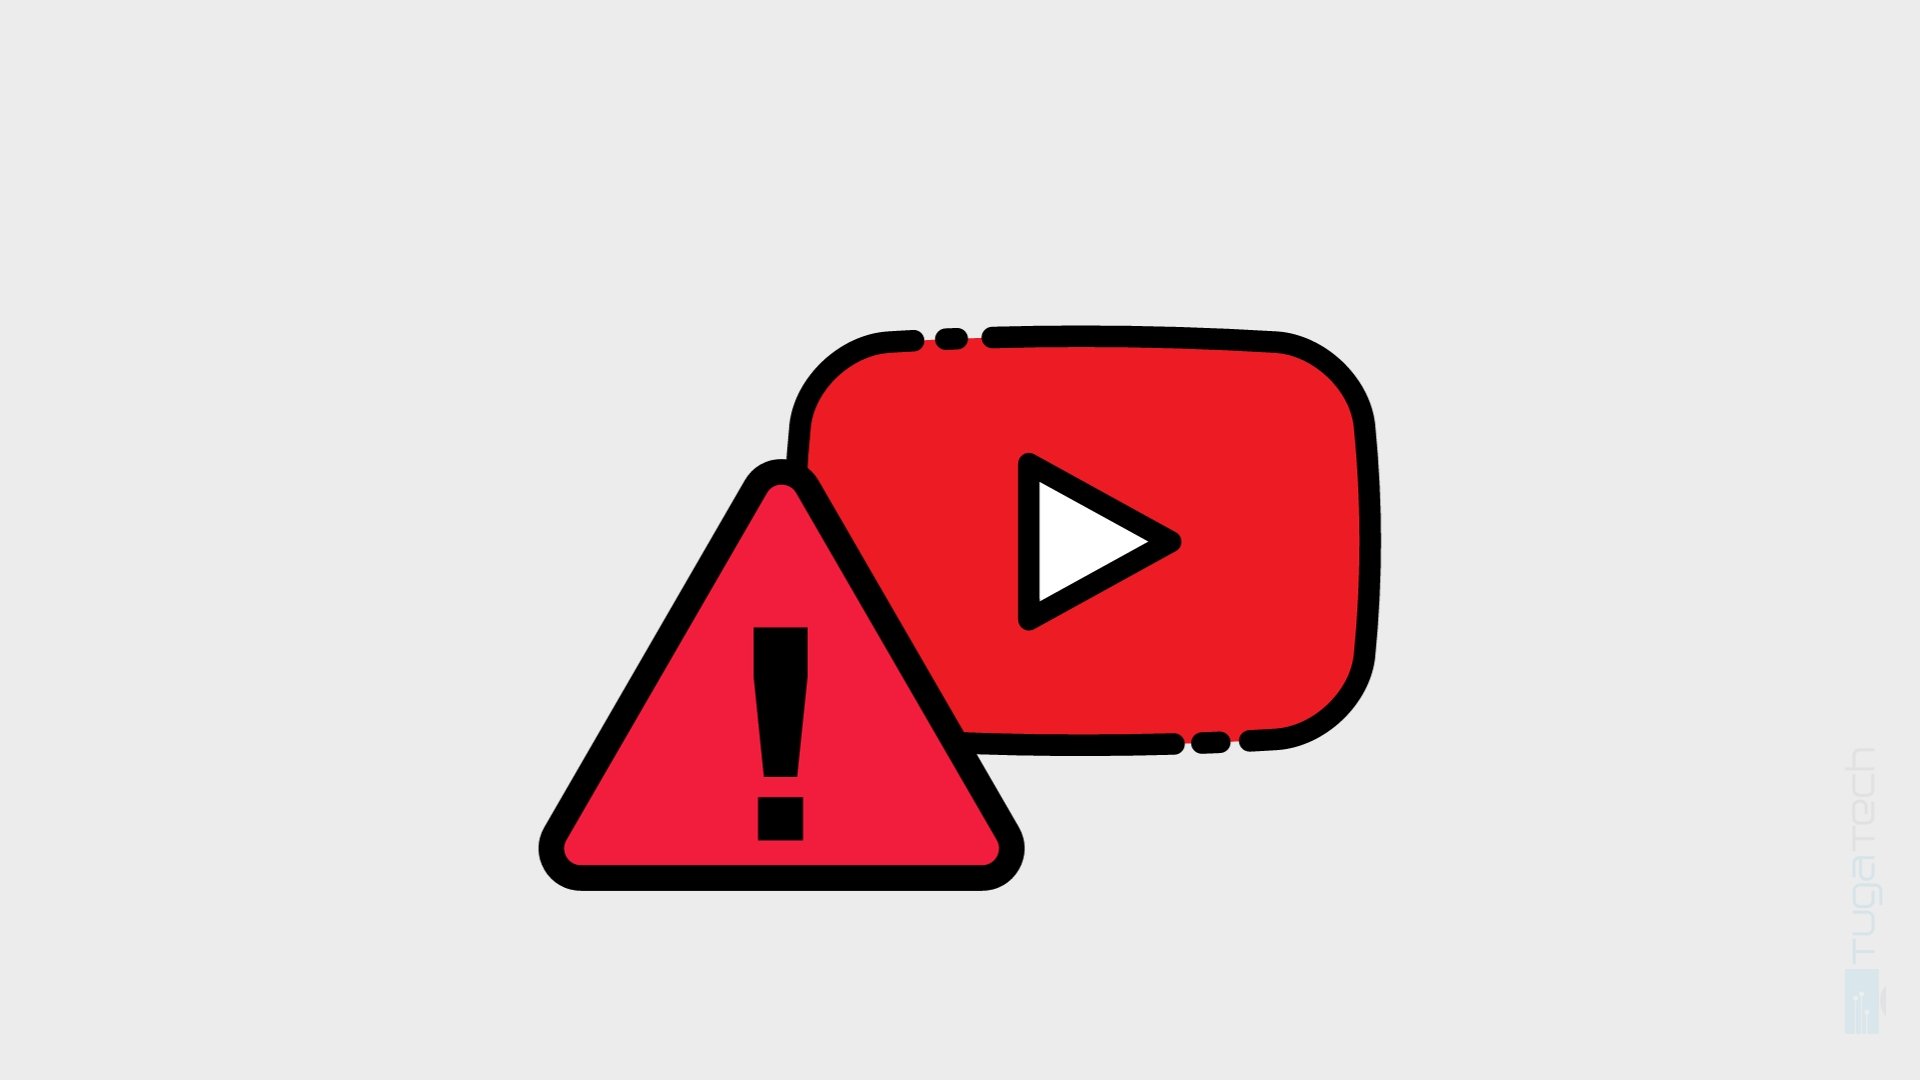 logo do Youtube com alerta